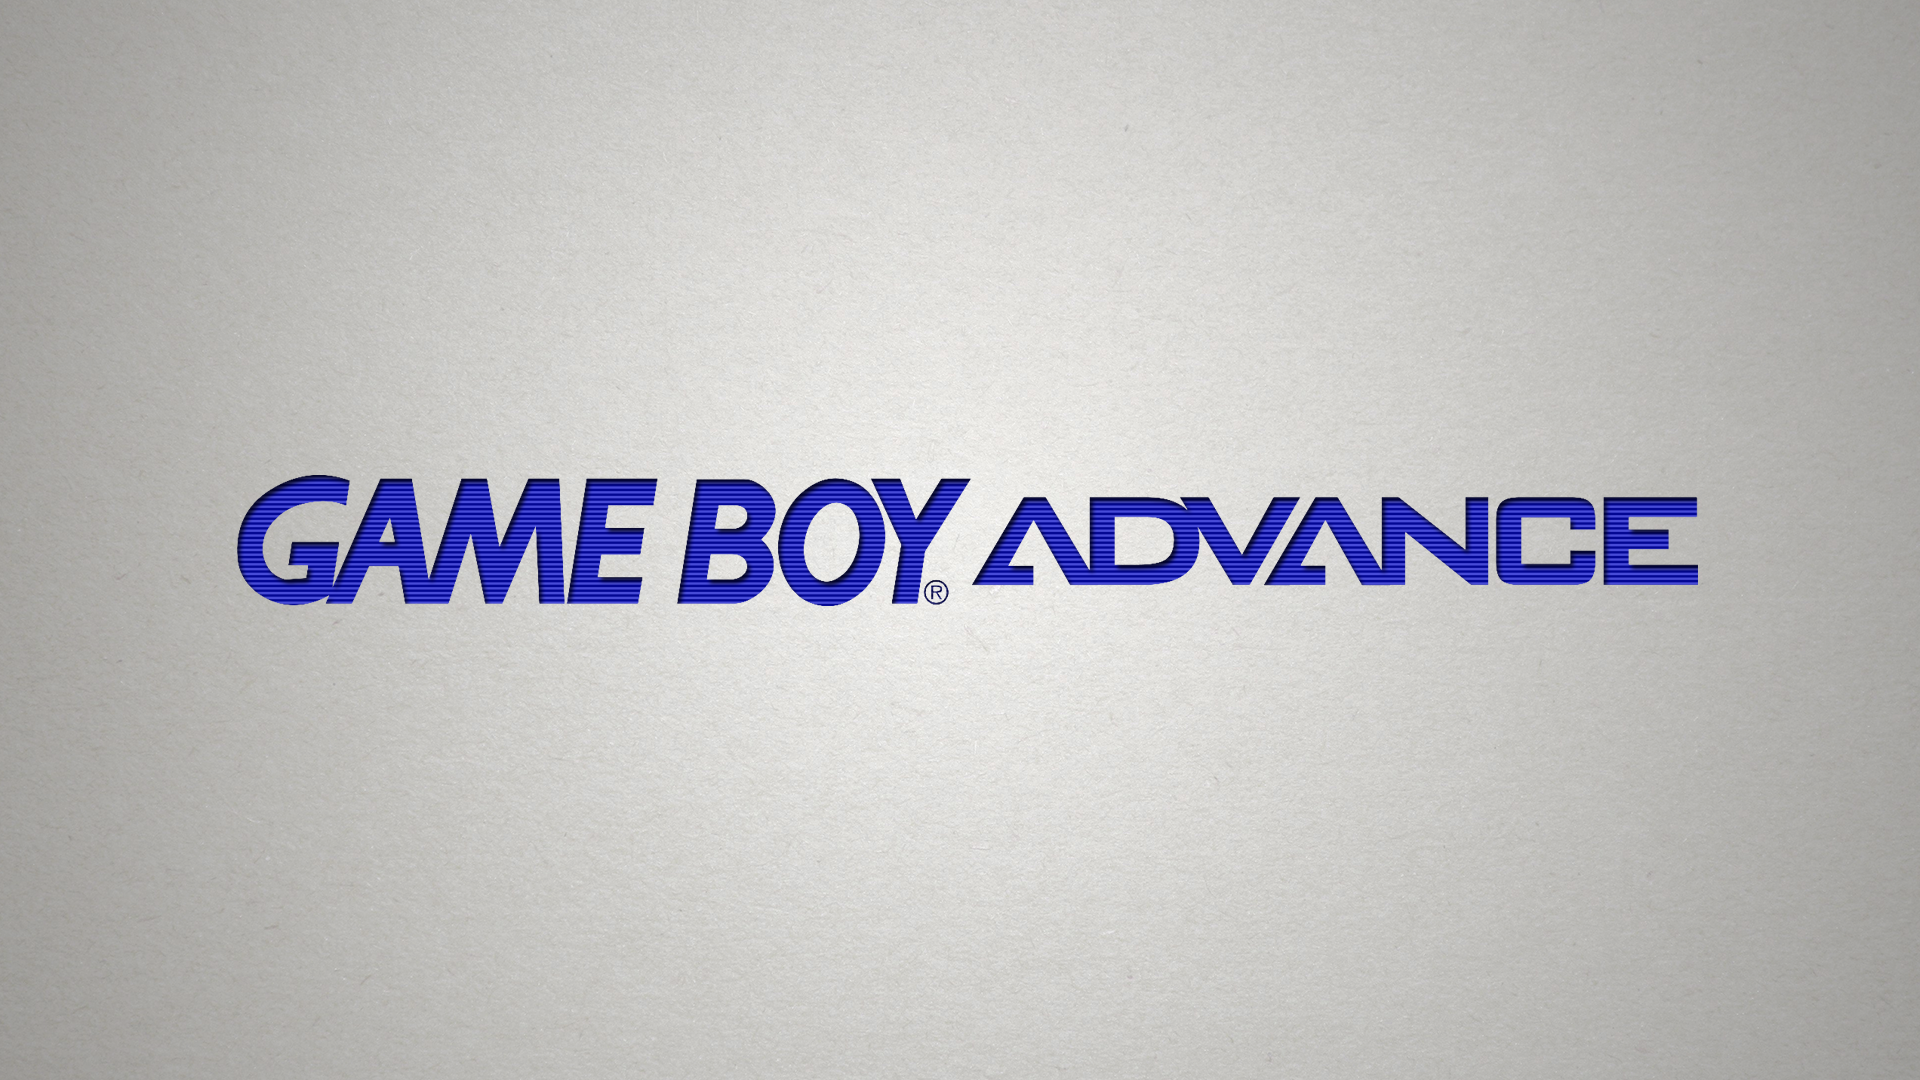 Game boy advance HD wallpapers